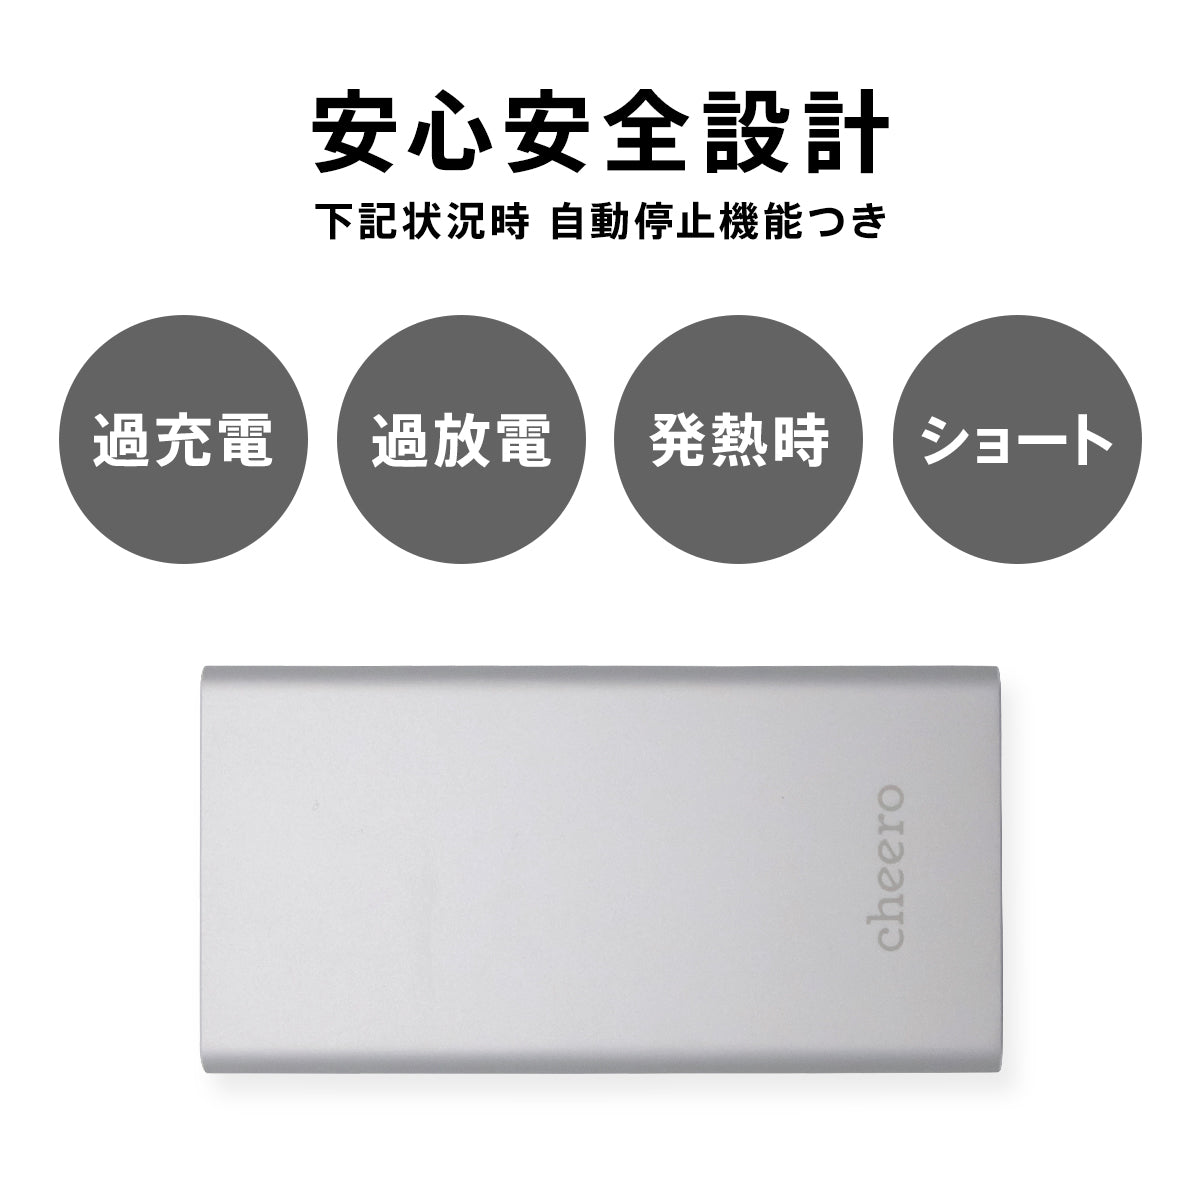 cheero Slim 5000mAh IoT機器対応 【USB-C ver.】